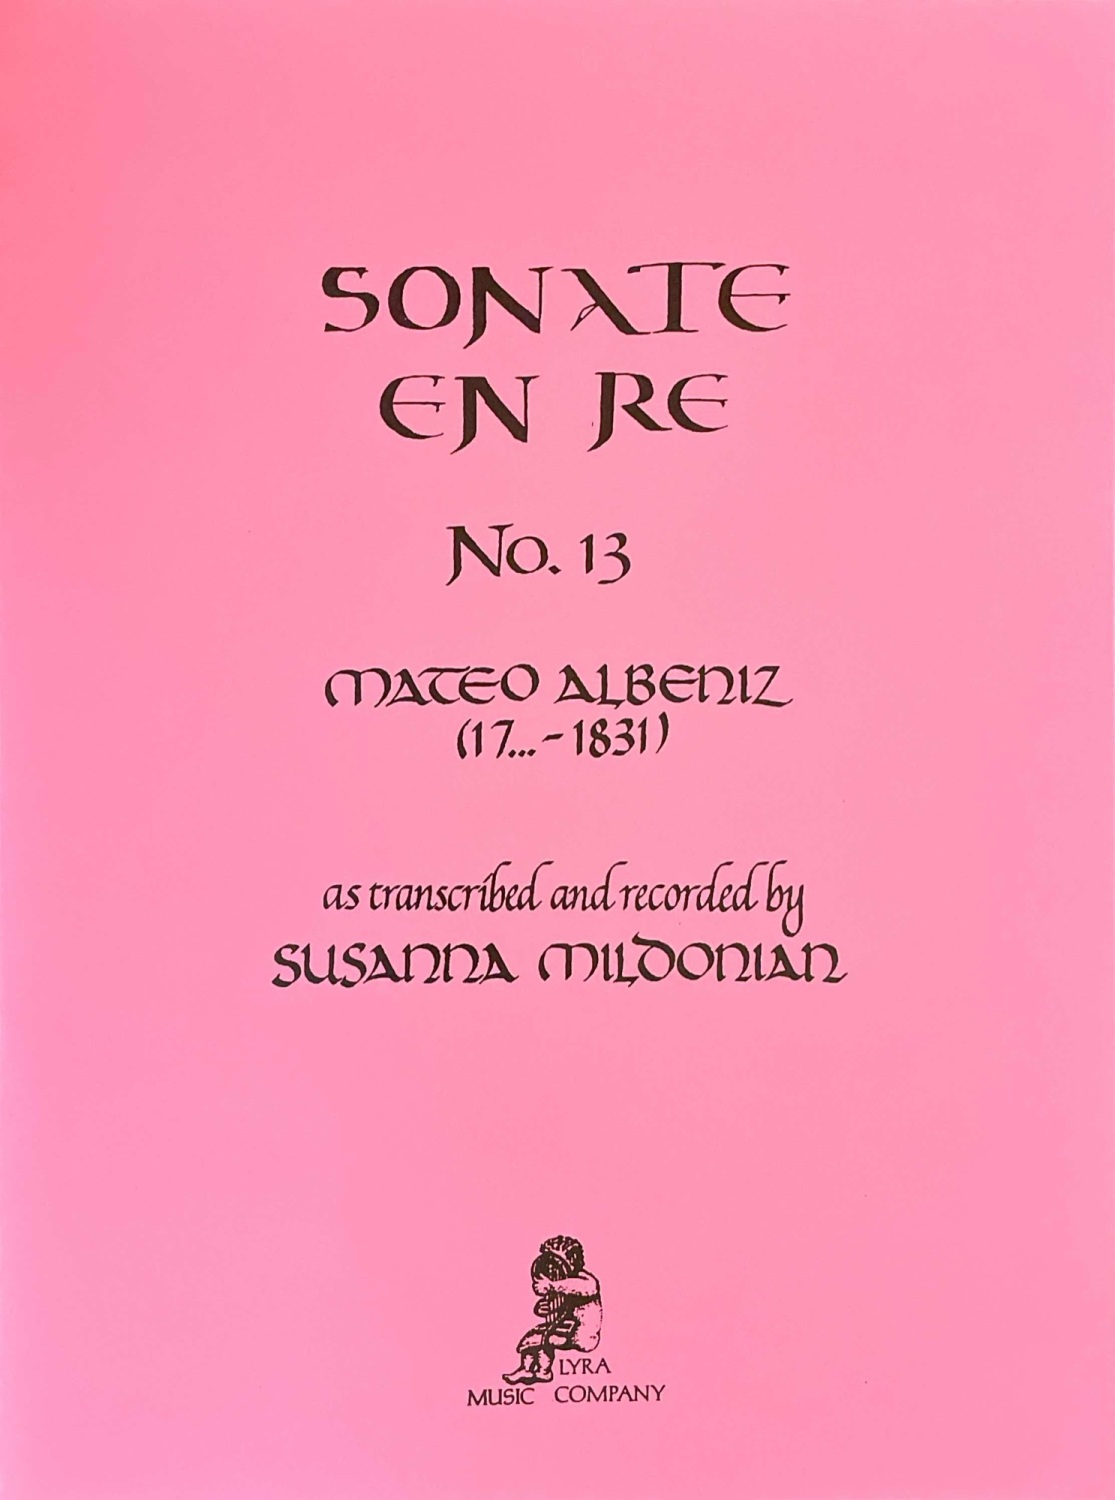 Sonate En Re No.13 - Albeniz